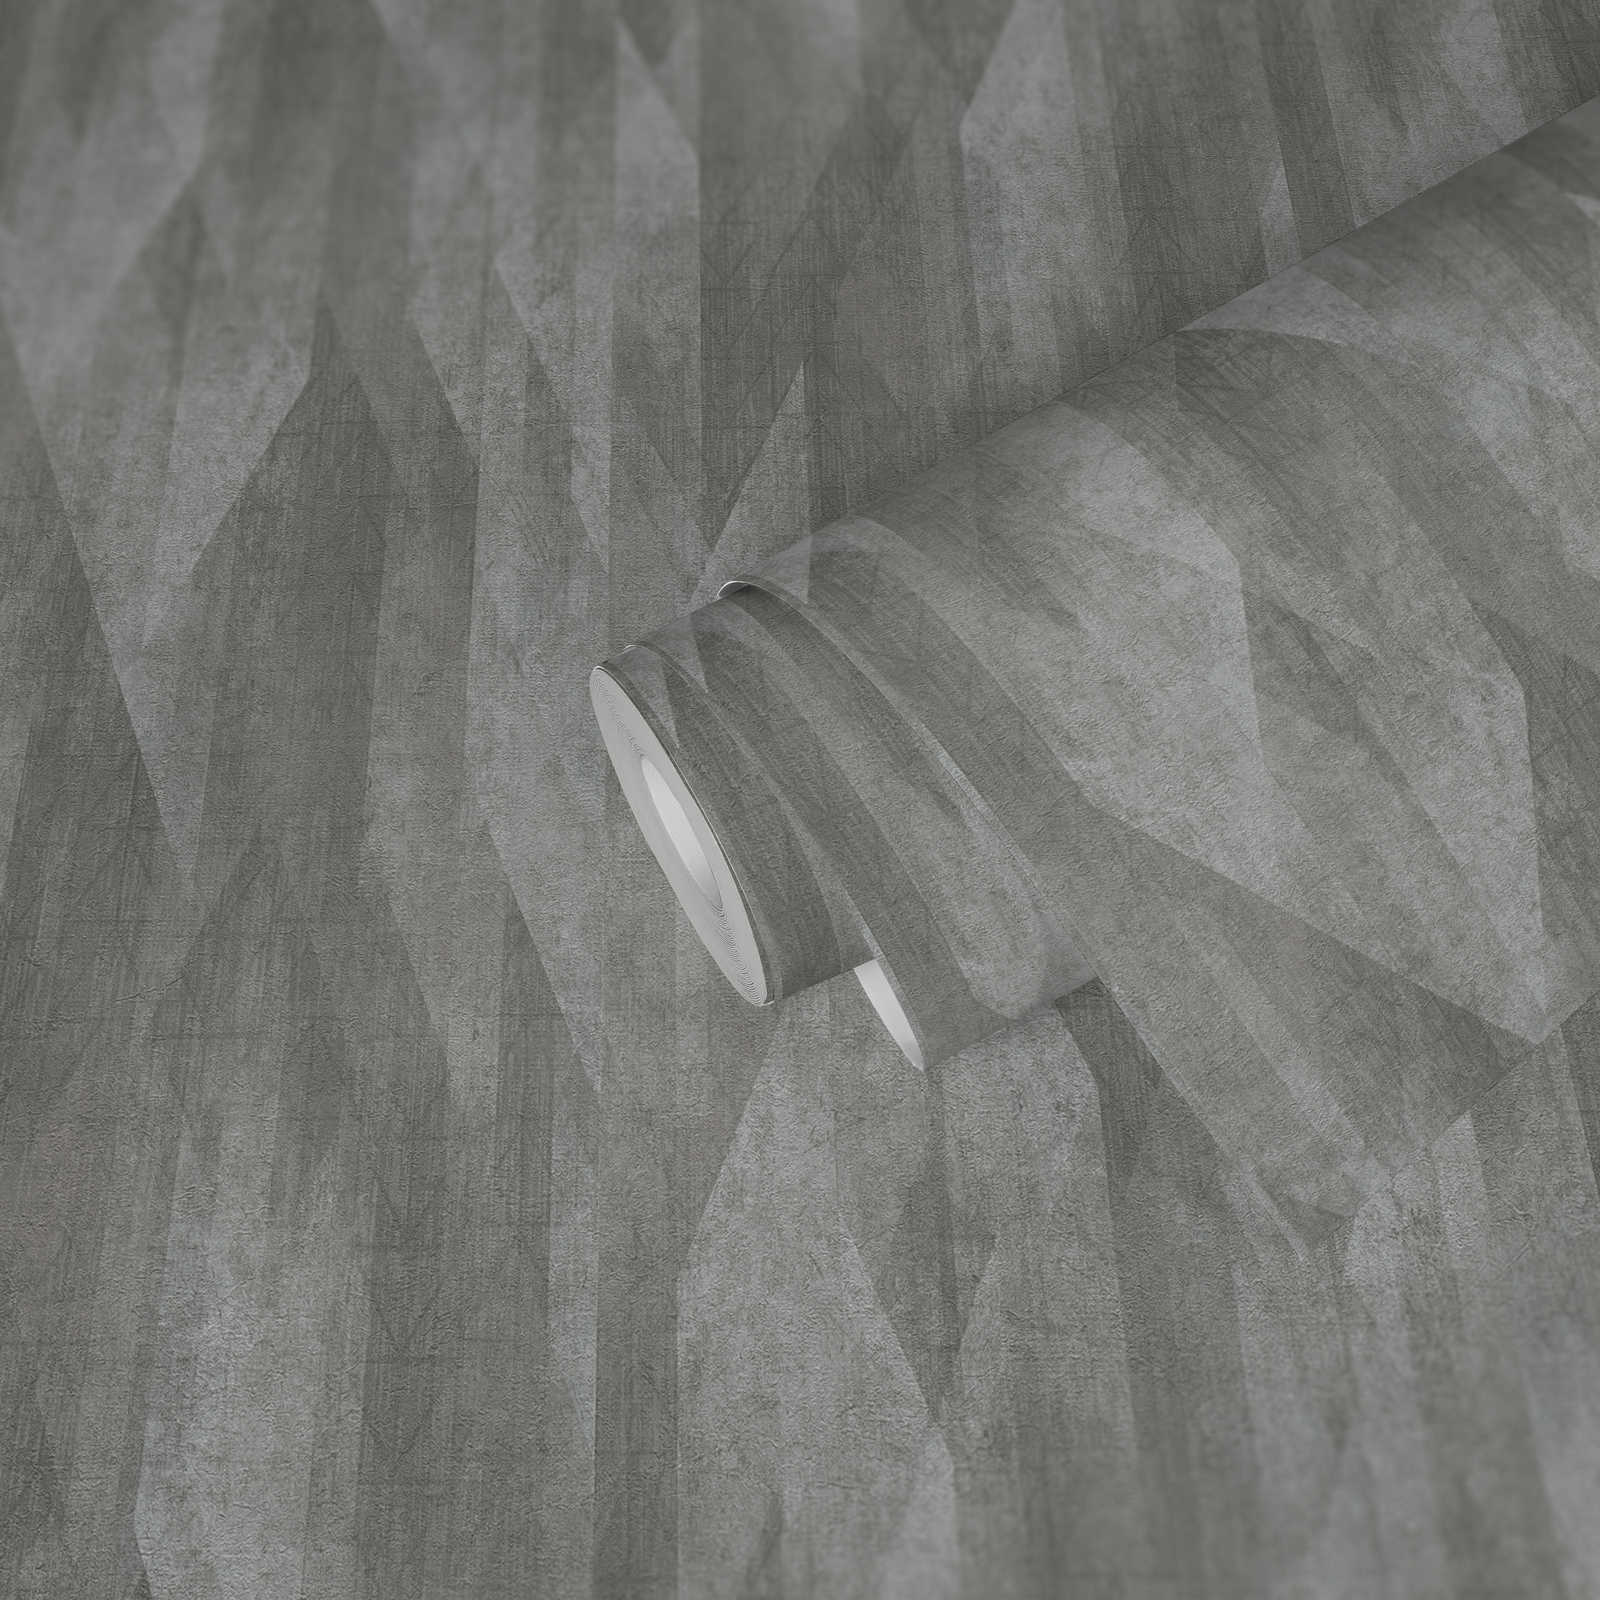             Papel pintado no tejido con diseño gráfico de rombos - gris
        